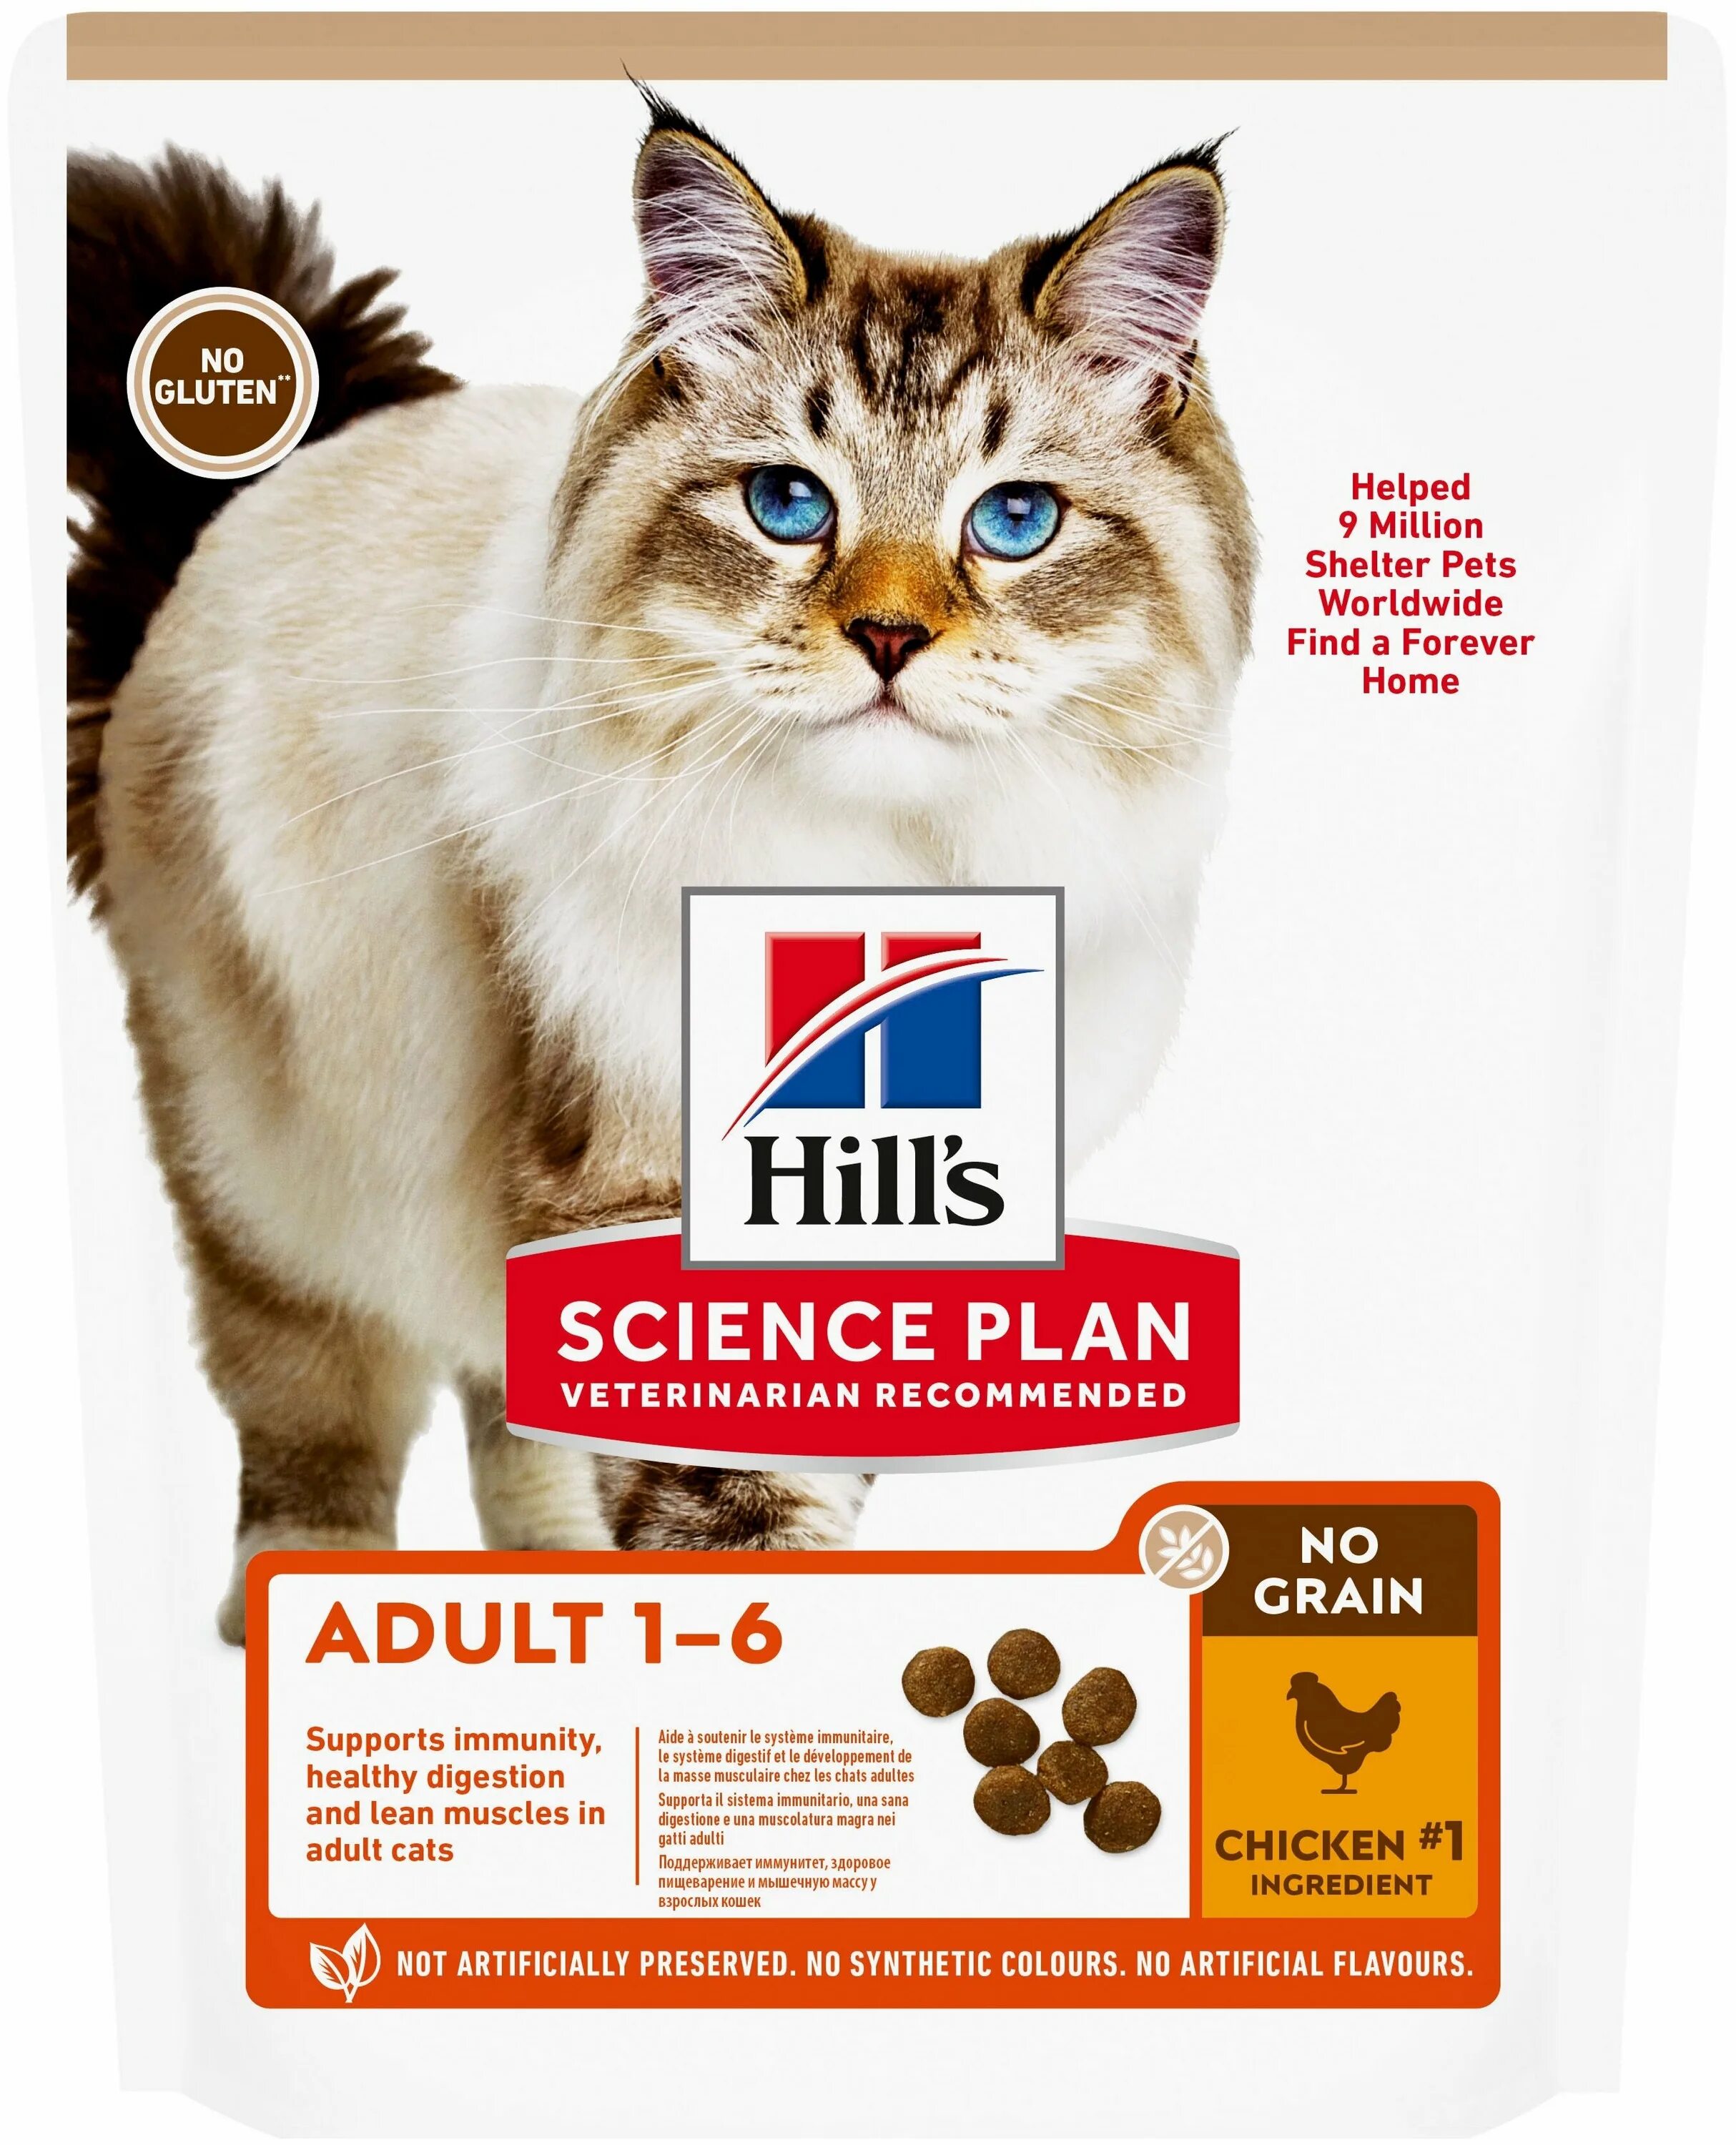 Хиллс для кошек отзывы. Хиллс корм Science Plan no Grain. Хиллс кд для кошек. Хиллс кд сухой для кошек. Сухой беззлаковый корм Hill's Science Plan no Grain для щенков, с курицей.